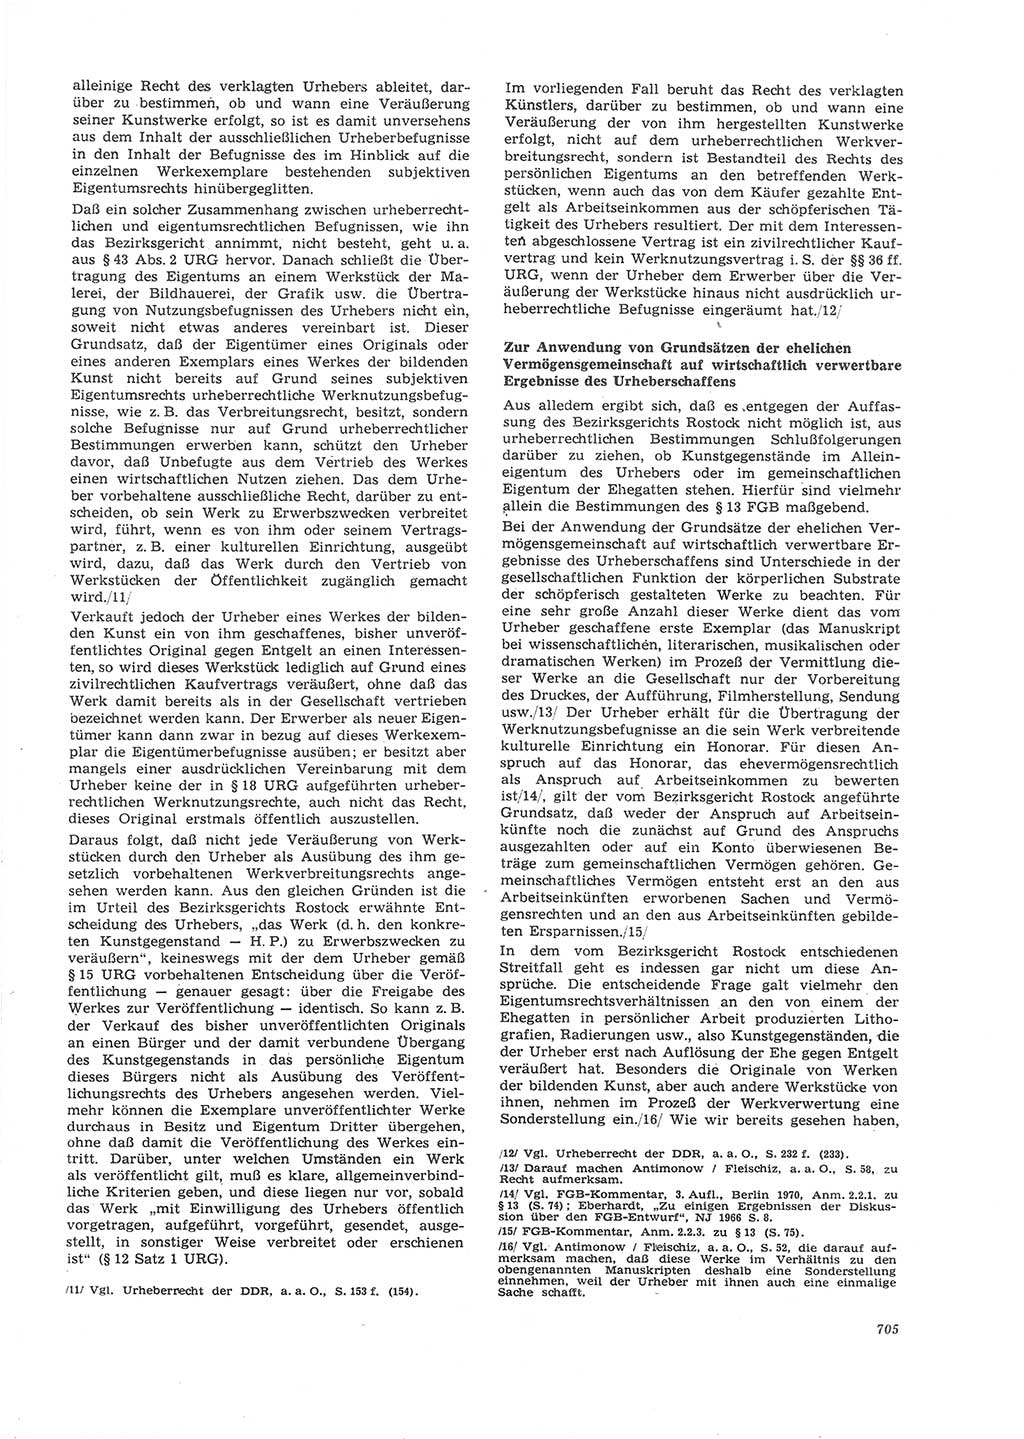 Neue Justiz (NJ), Zeitschrift für Recht und Rechtswissenschaft [Deutsche Demokratische Republik (DDR)], 26. Jahrgang 1972, Seite 705 (NJ DDR 1972, S. 705)